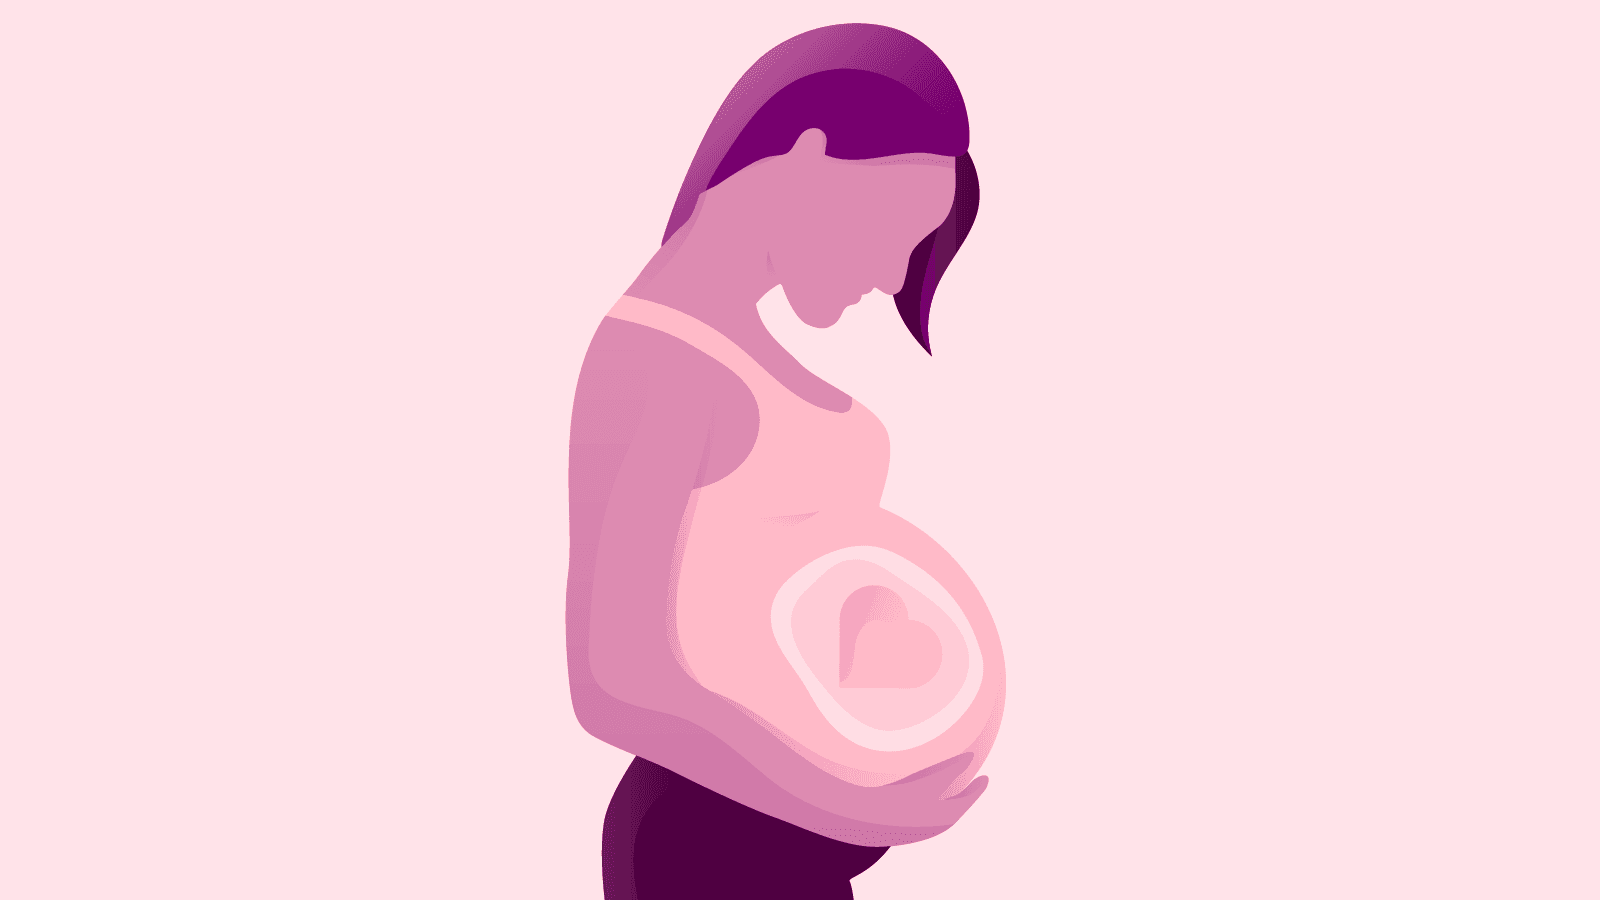 Terhesség alatt az étrended és az ivási szokásaid hatással lehetnek a gyermekedre is. Amit tudnod kell a terhesség alatti alkoholfogyasztásról.